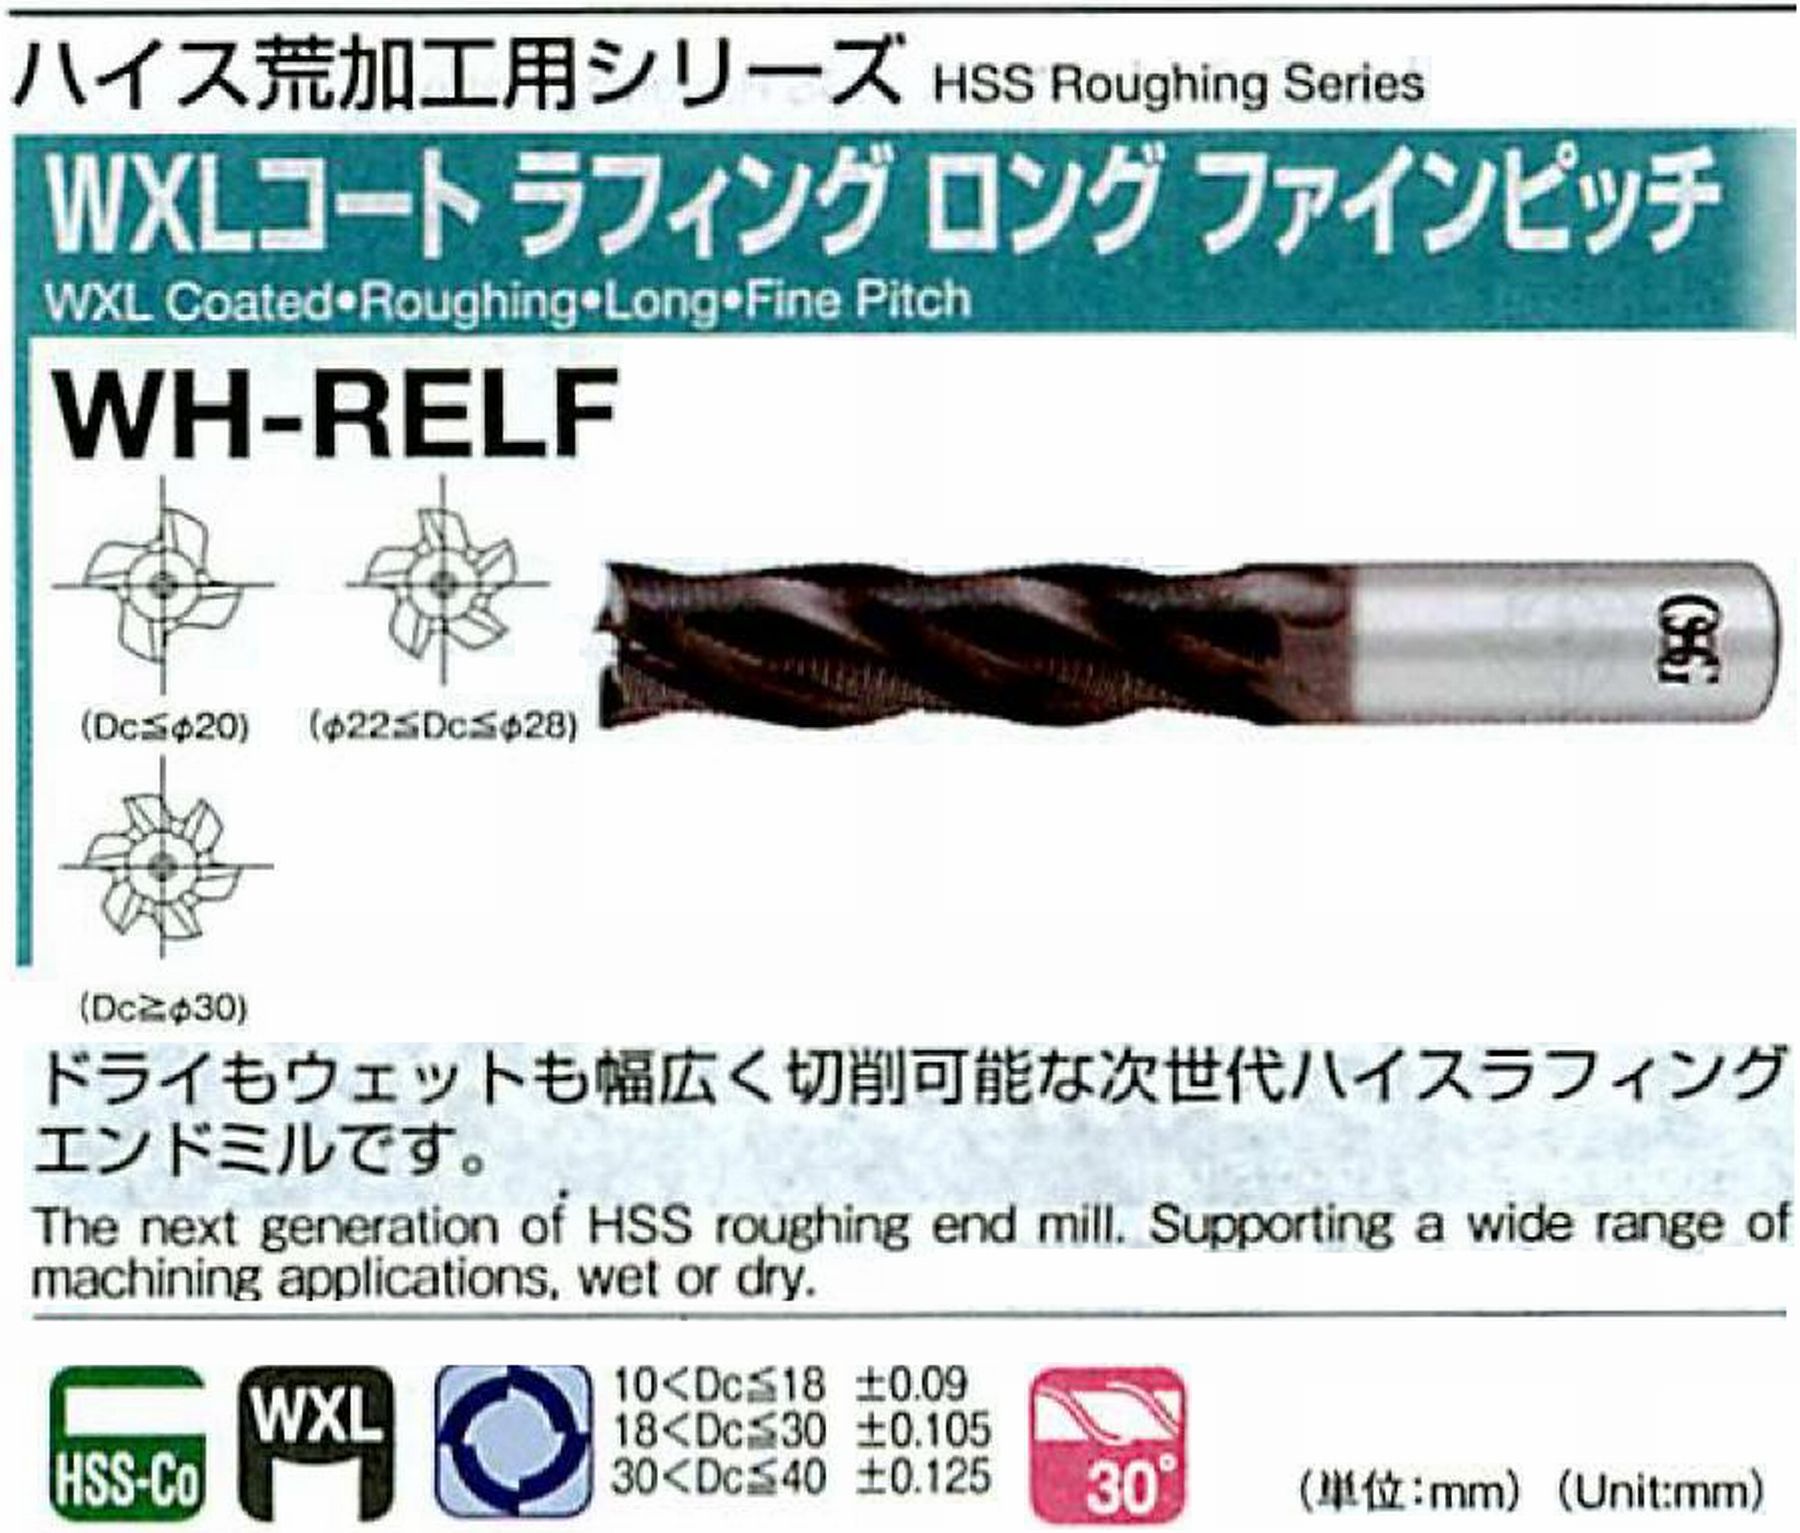 オーエスジー/OSG WXLコートラフィング ロング ファインピッチ WH-RELF 外径15 全長115 刃長53 シャンク径12mm 刃数4